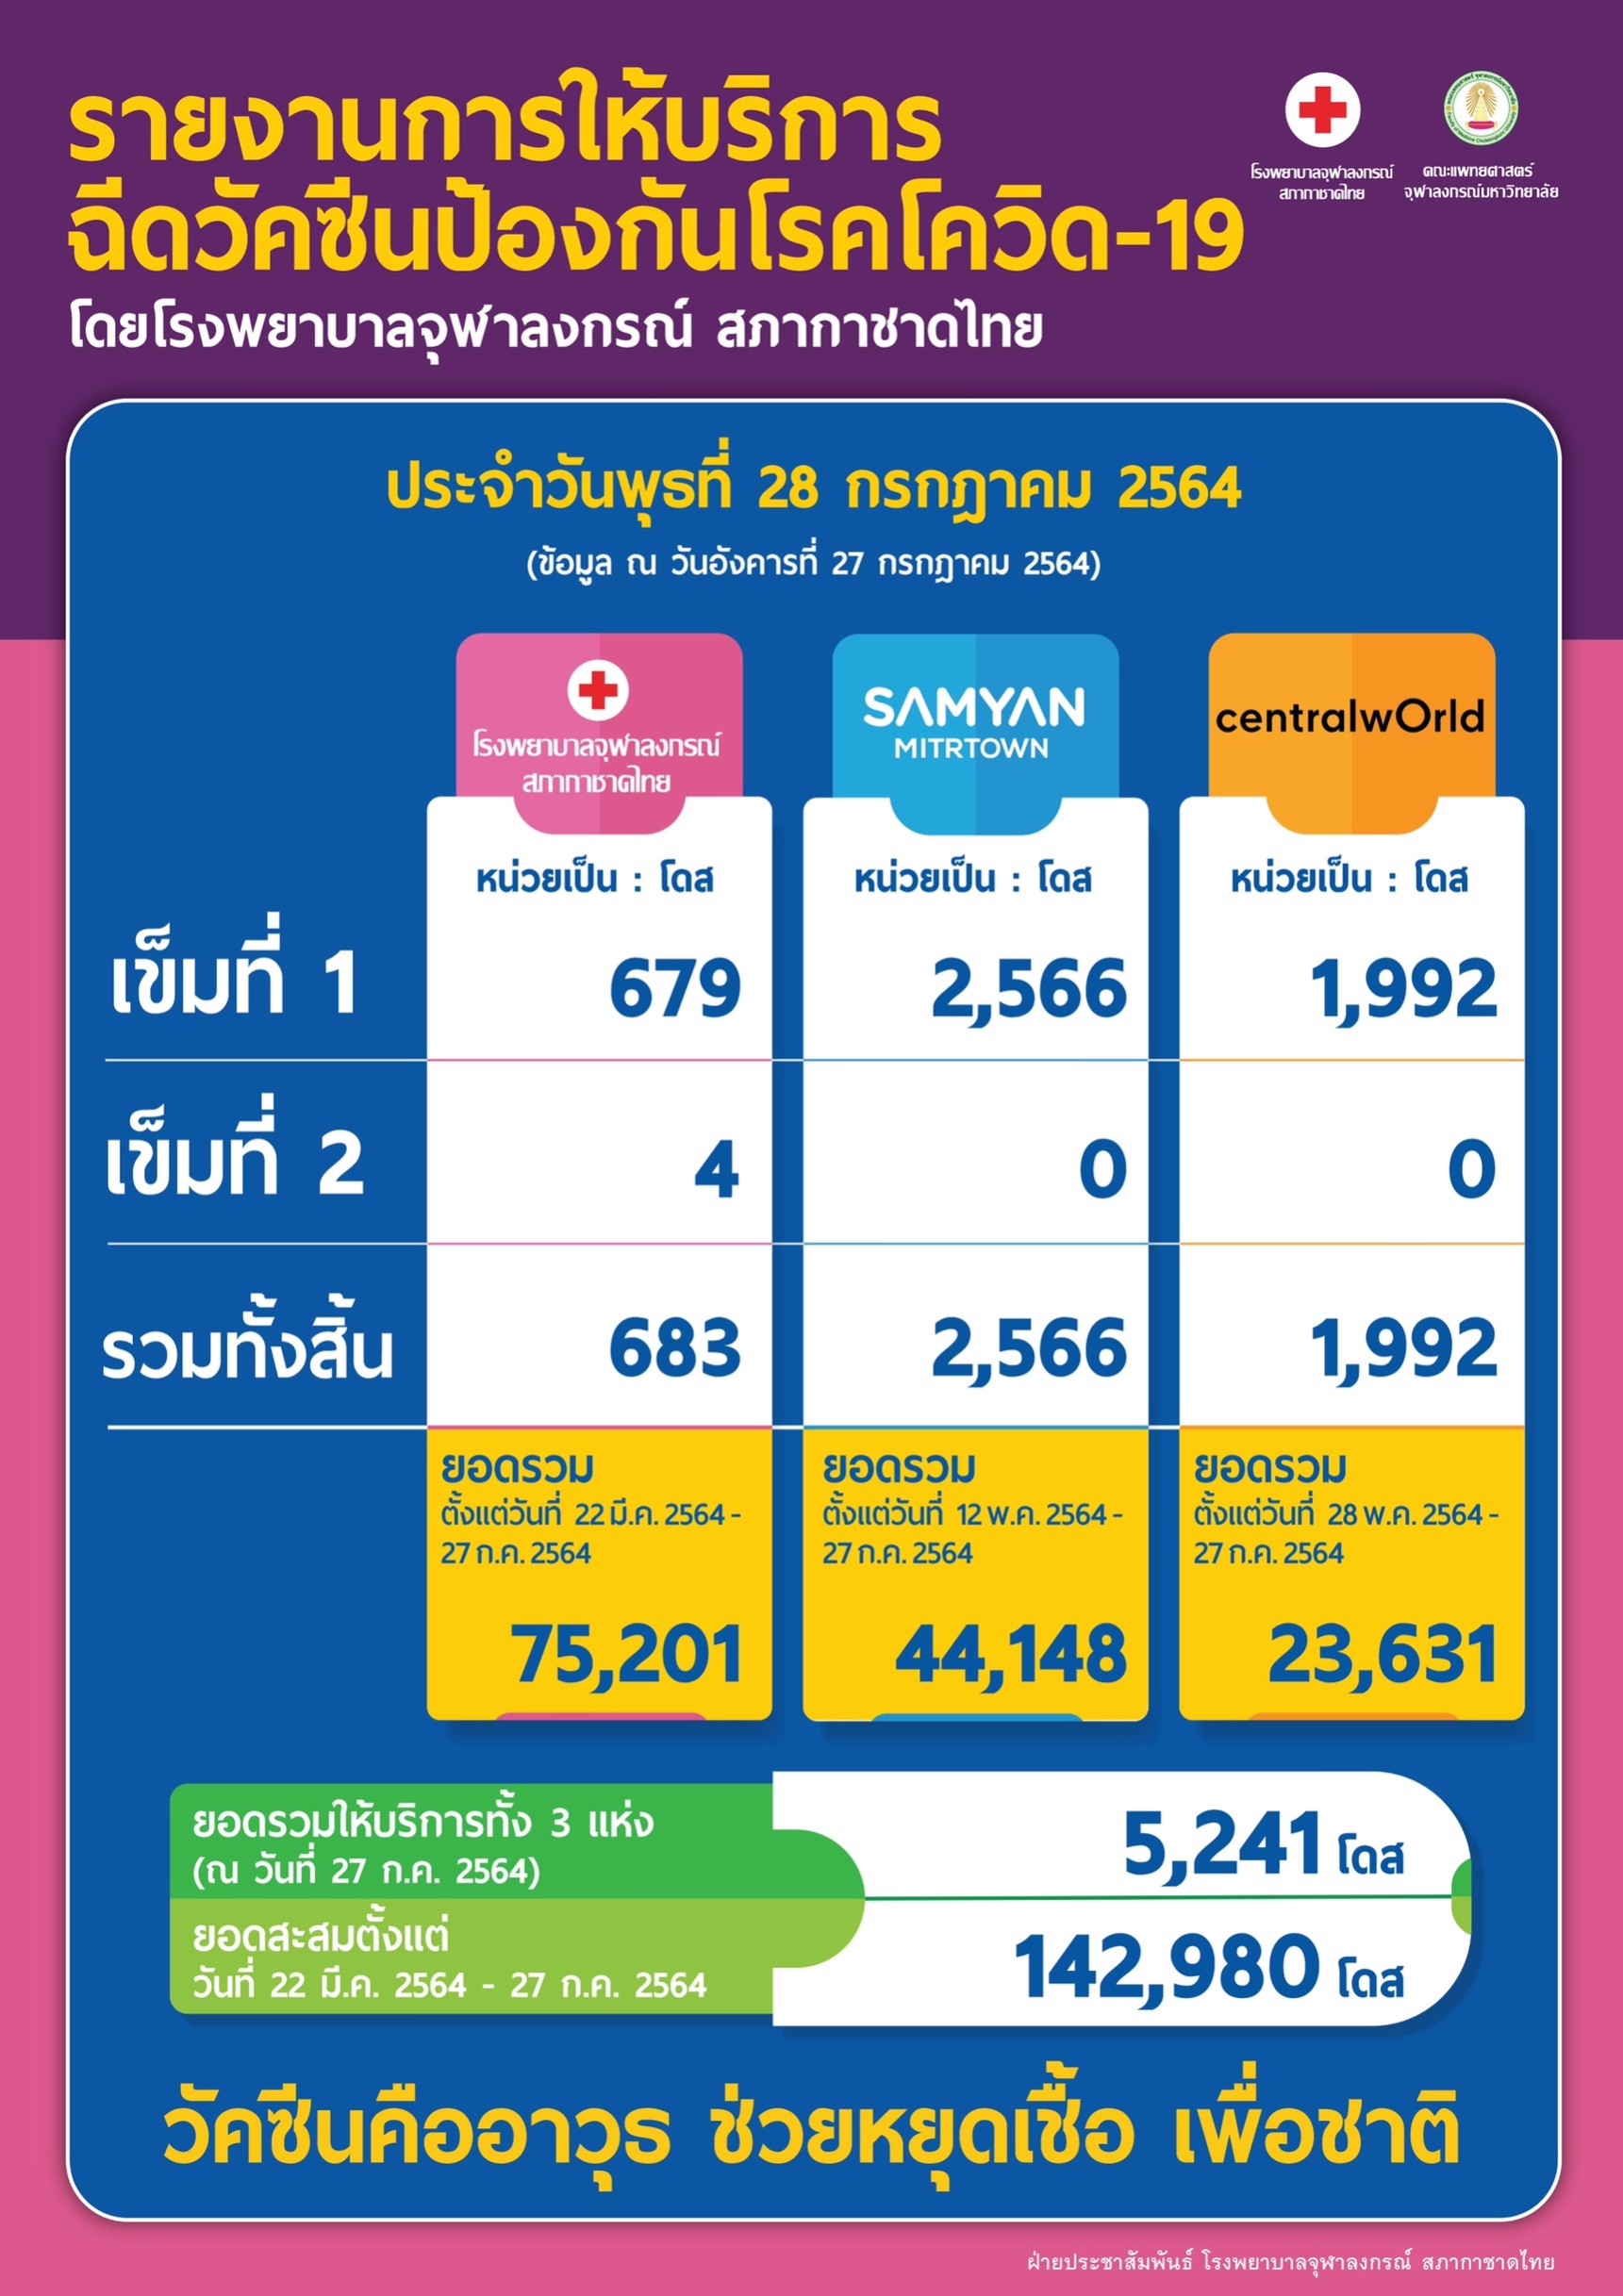 รายงานการให้บริการ ฉีดวัคซีนป้องกันโรคโควิด-19 โดยโรงพยาบาลจุฬาลงกรณ์ สภากาชาดไทย ประจำวันพุธที่ 28 กรกฎาคม 2564